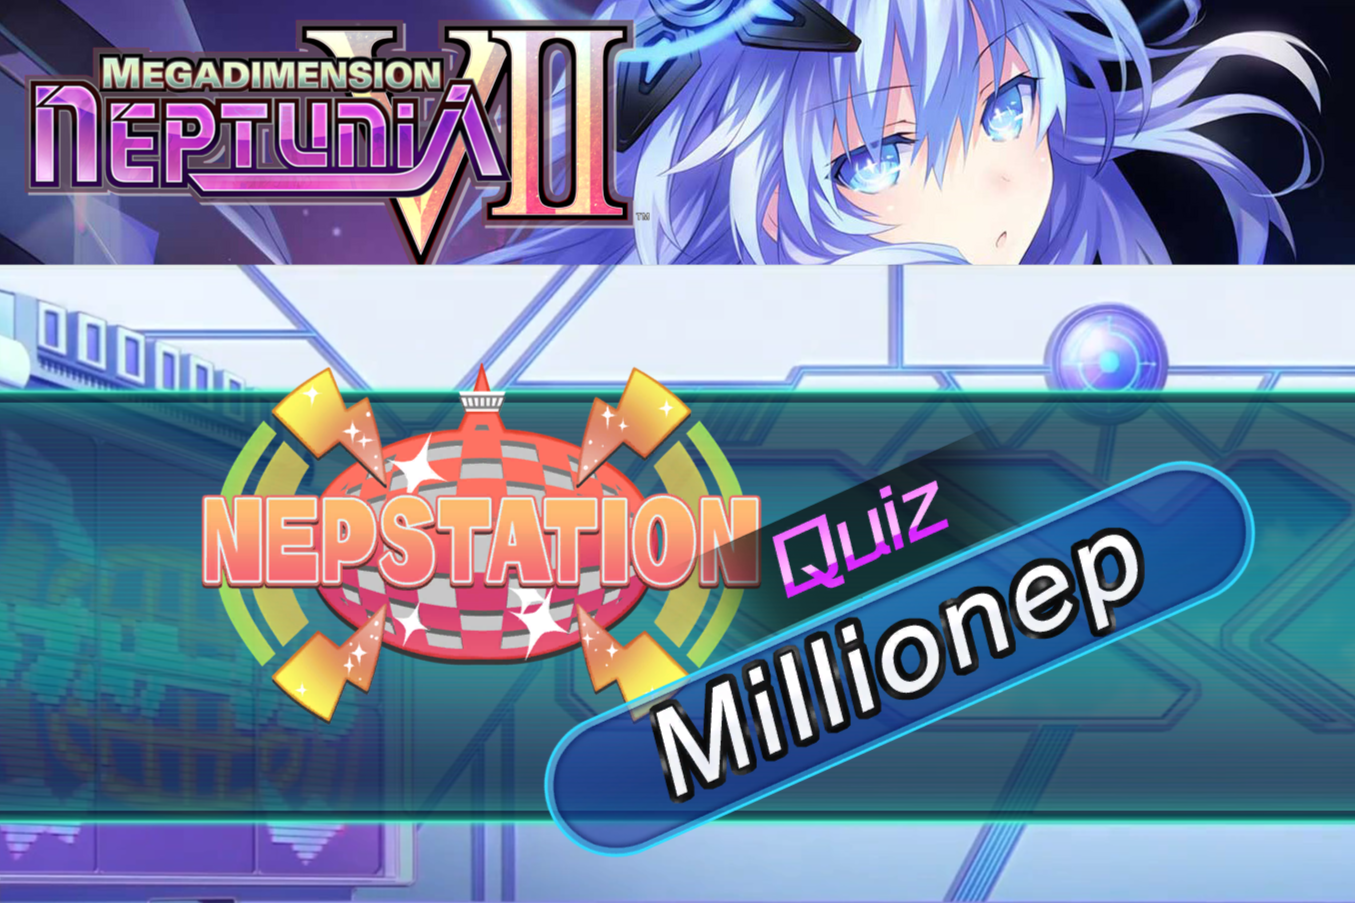 Quiz Millionep from Megadimension Neptunia VII